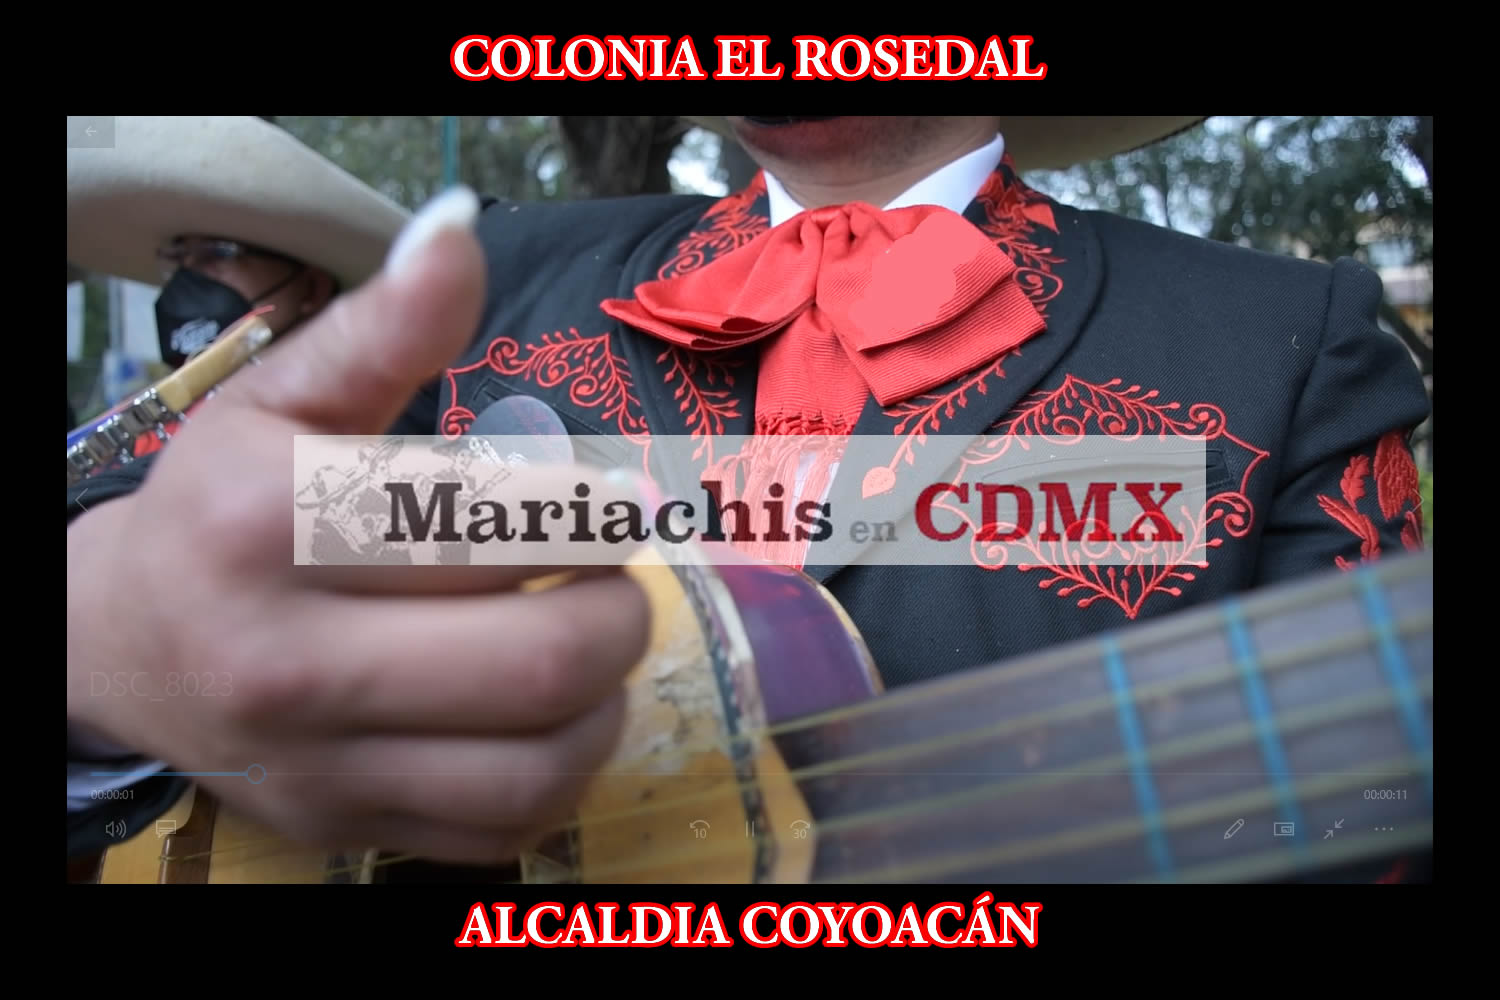 Mariachis en la Colonia El Rosedal